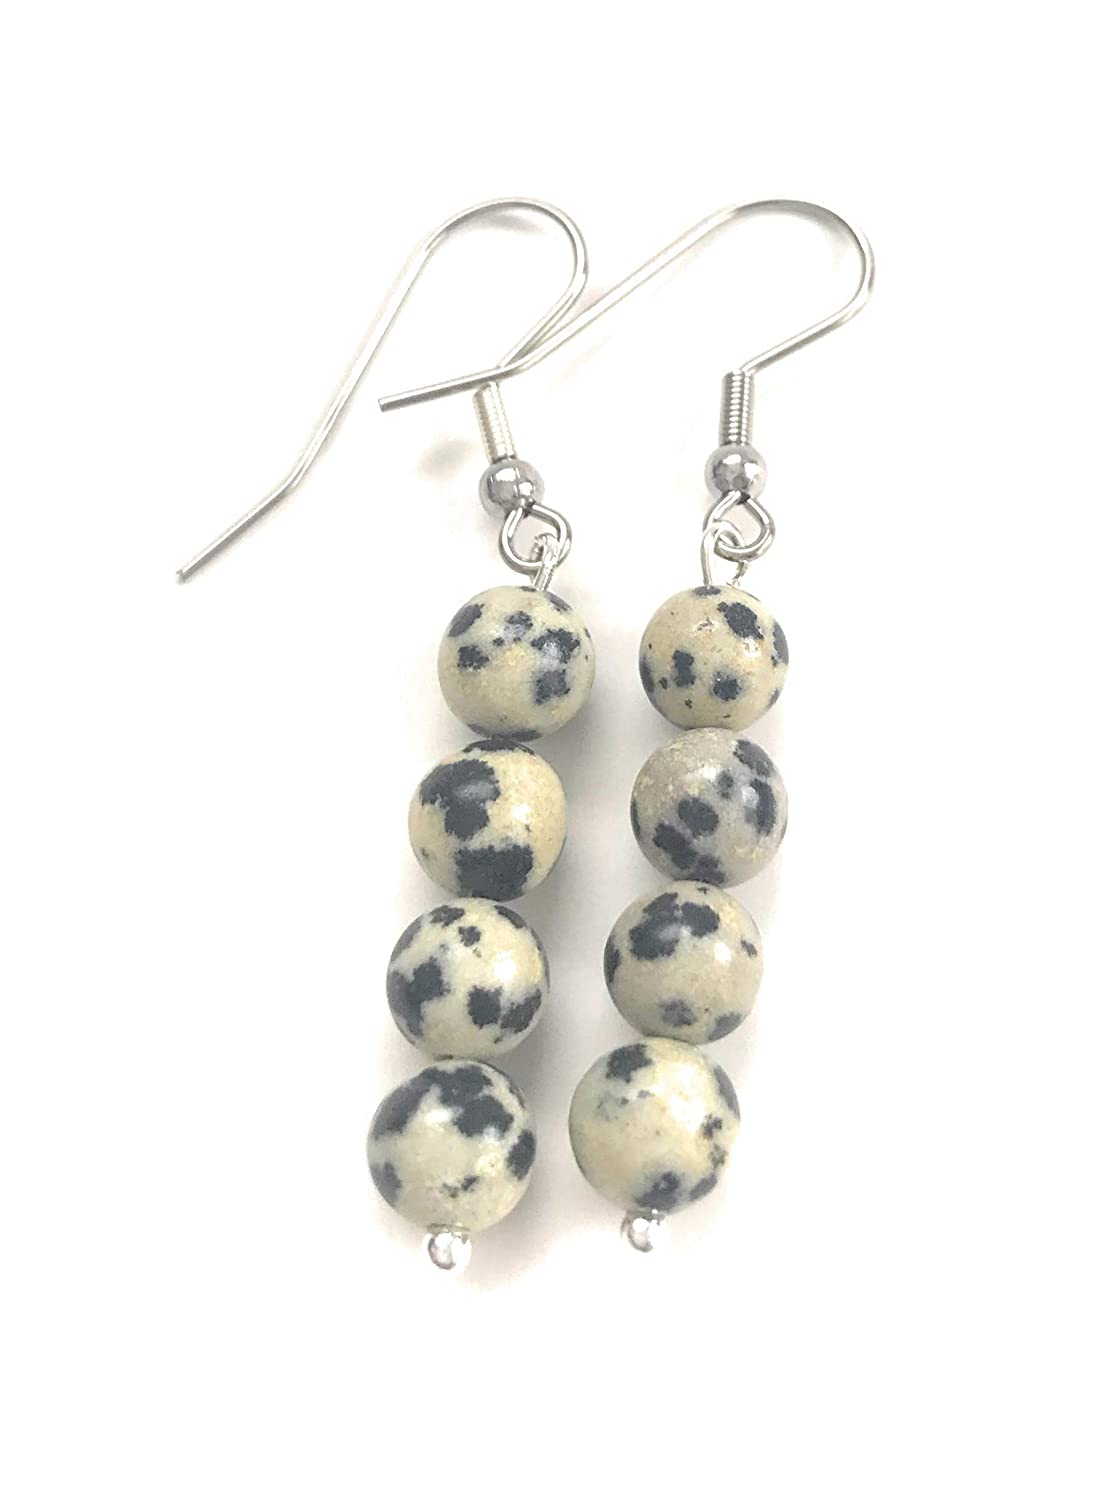 Dalmatian Gemstone Beaded Dangle Earrings Side View from Scott D Jewelry Designs